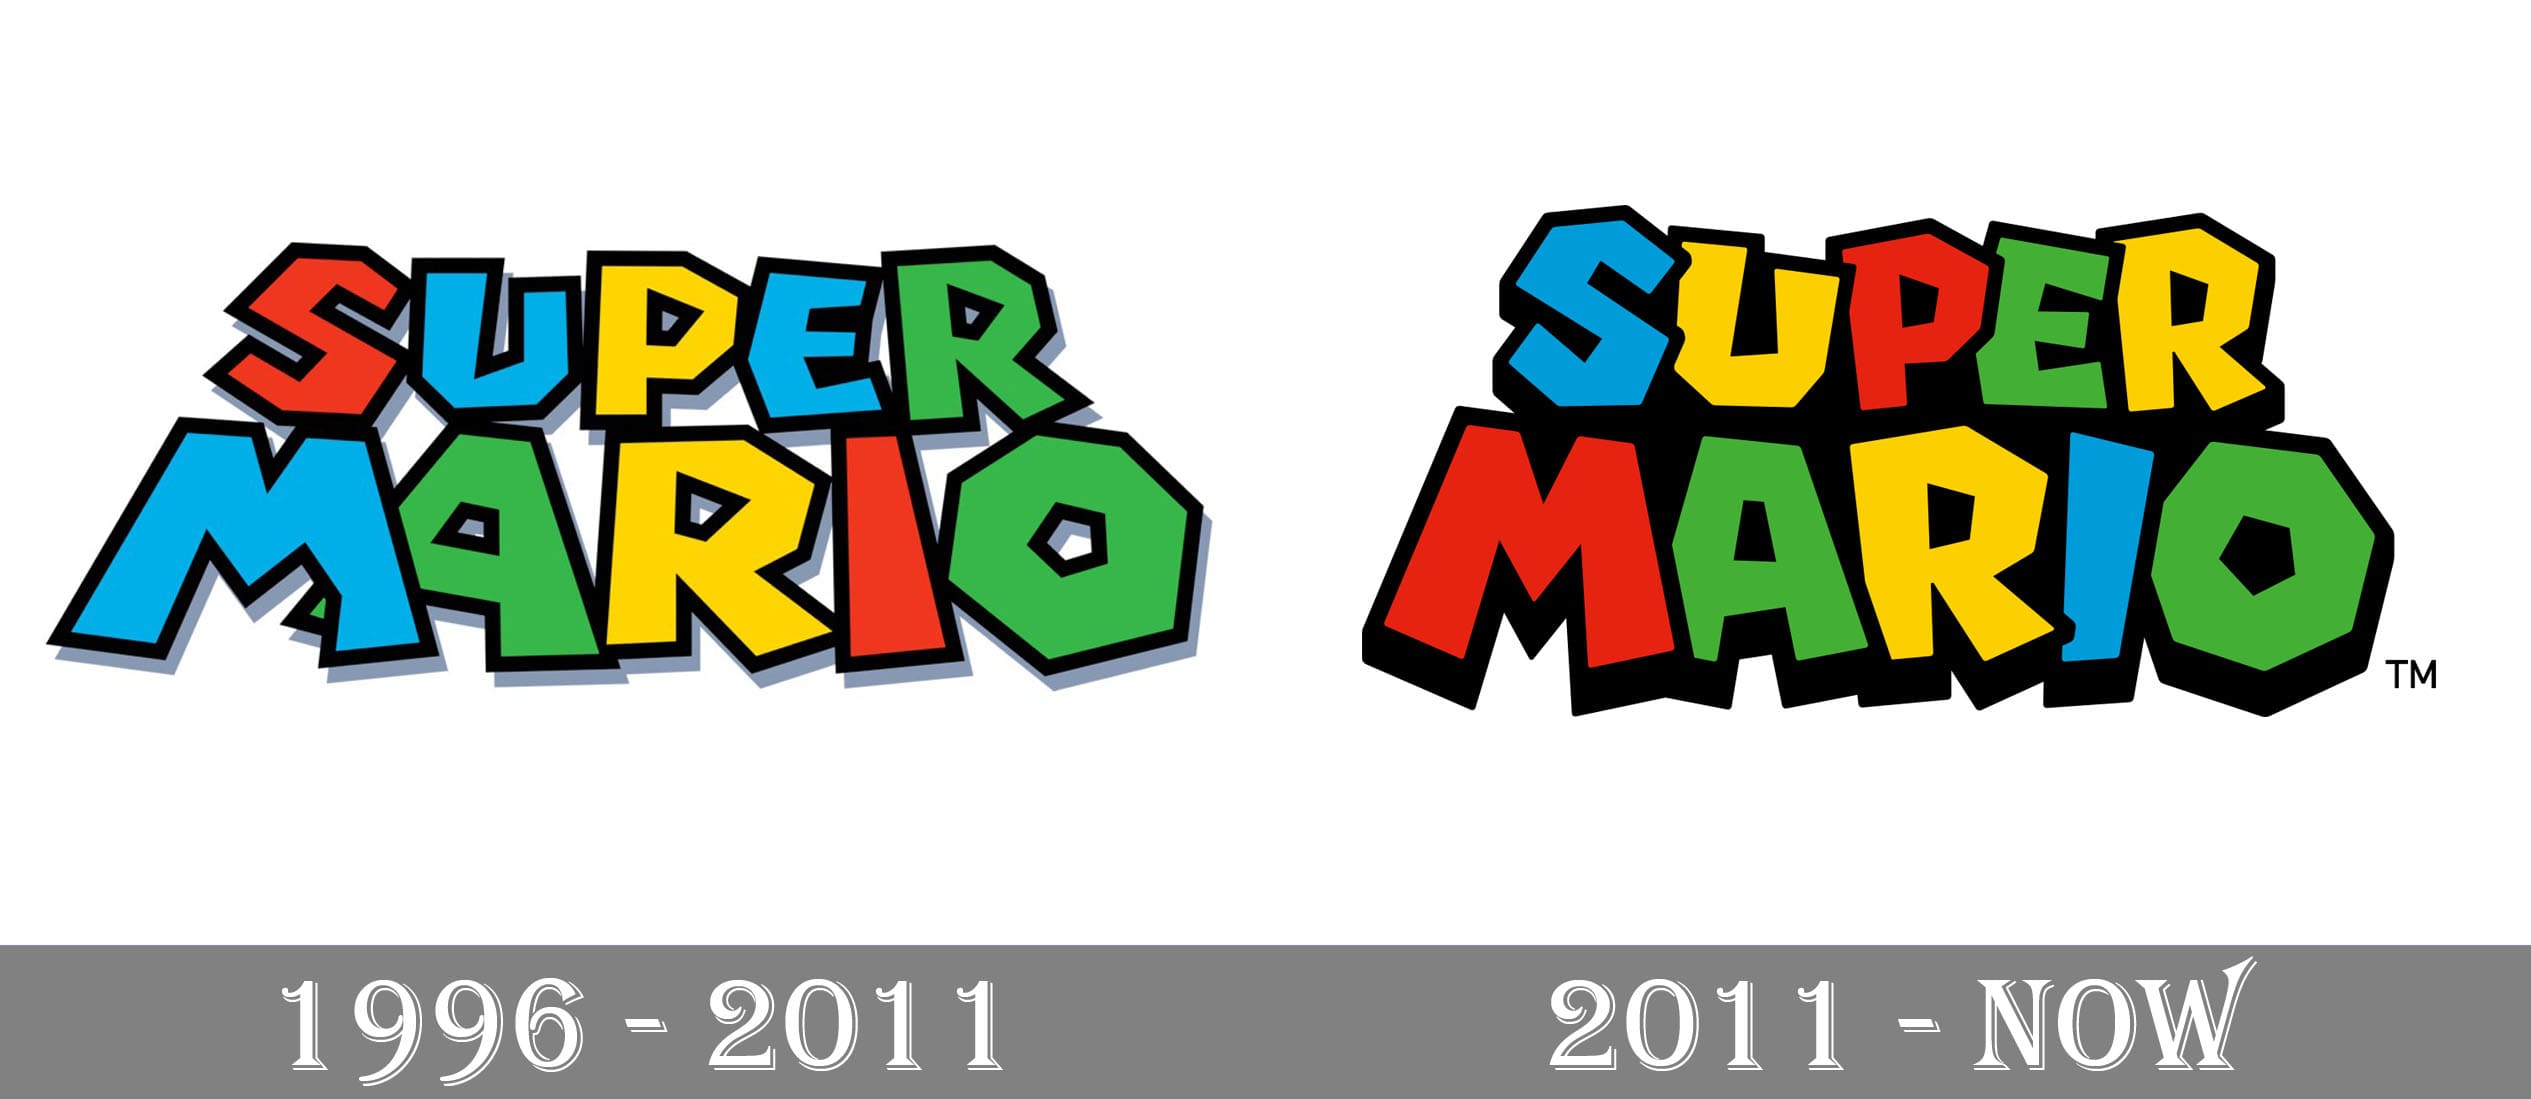 old super mario bros logo